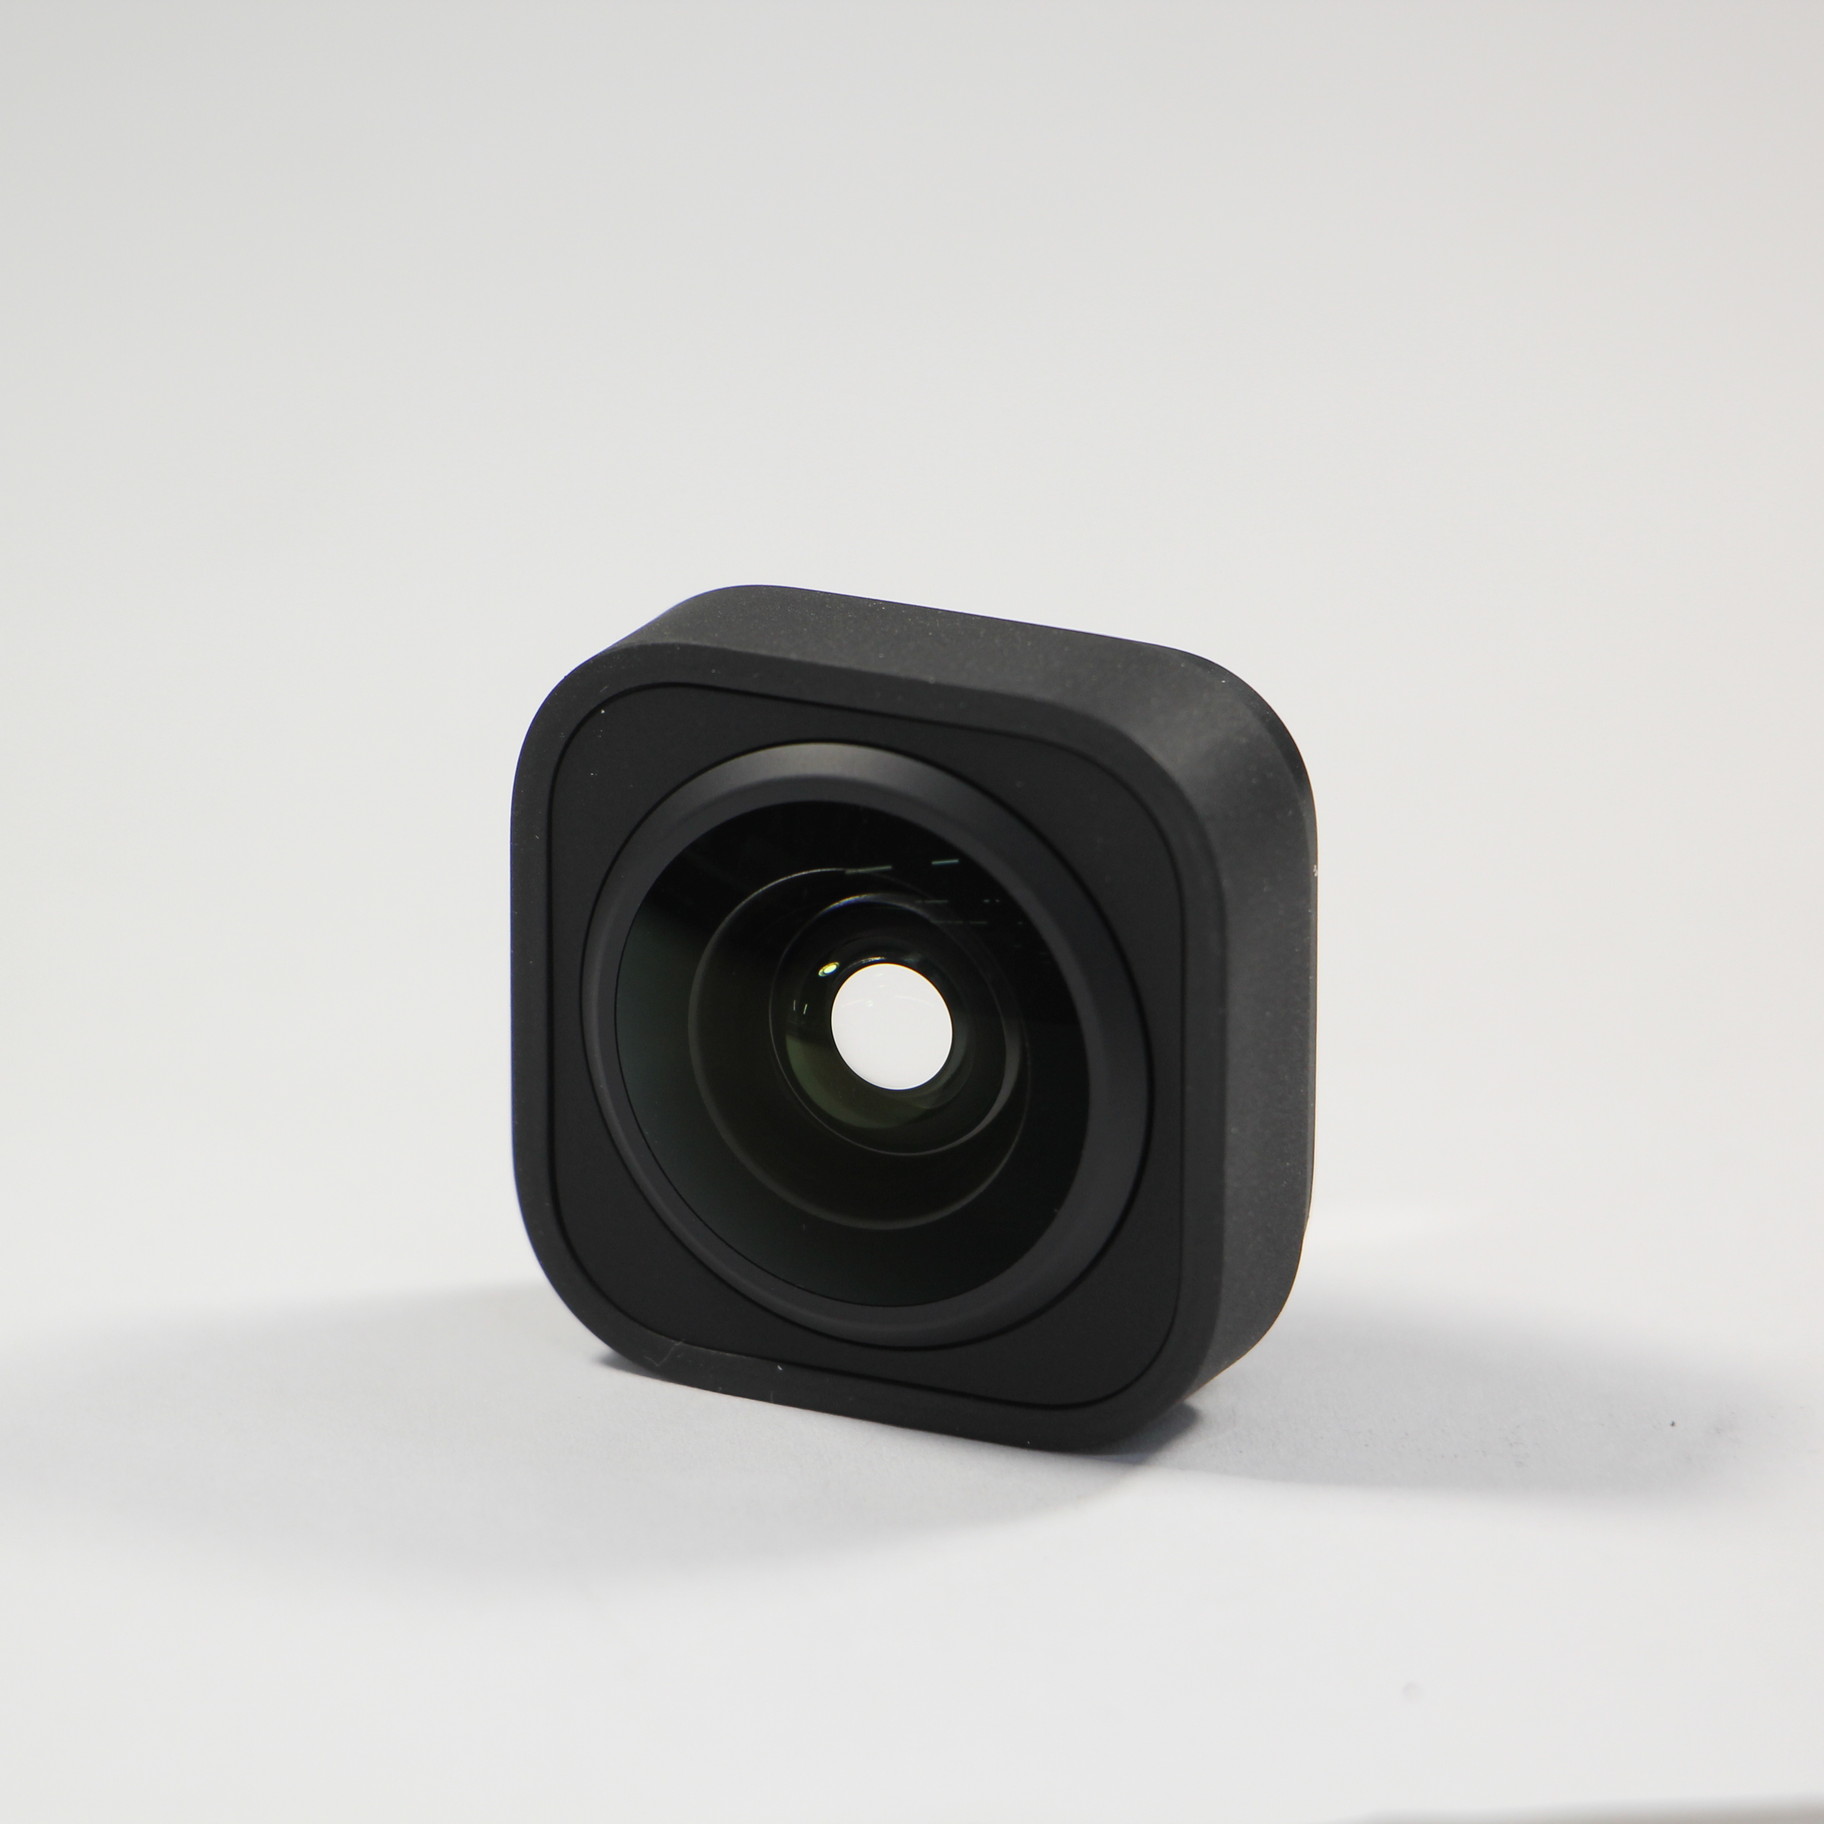 売れ筋商品 GoPro アクセサリー ゴープロ HERO9 BLACK MAX レンズモジュラー ADWAL-001 GoPro